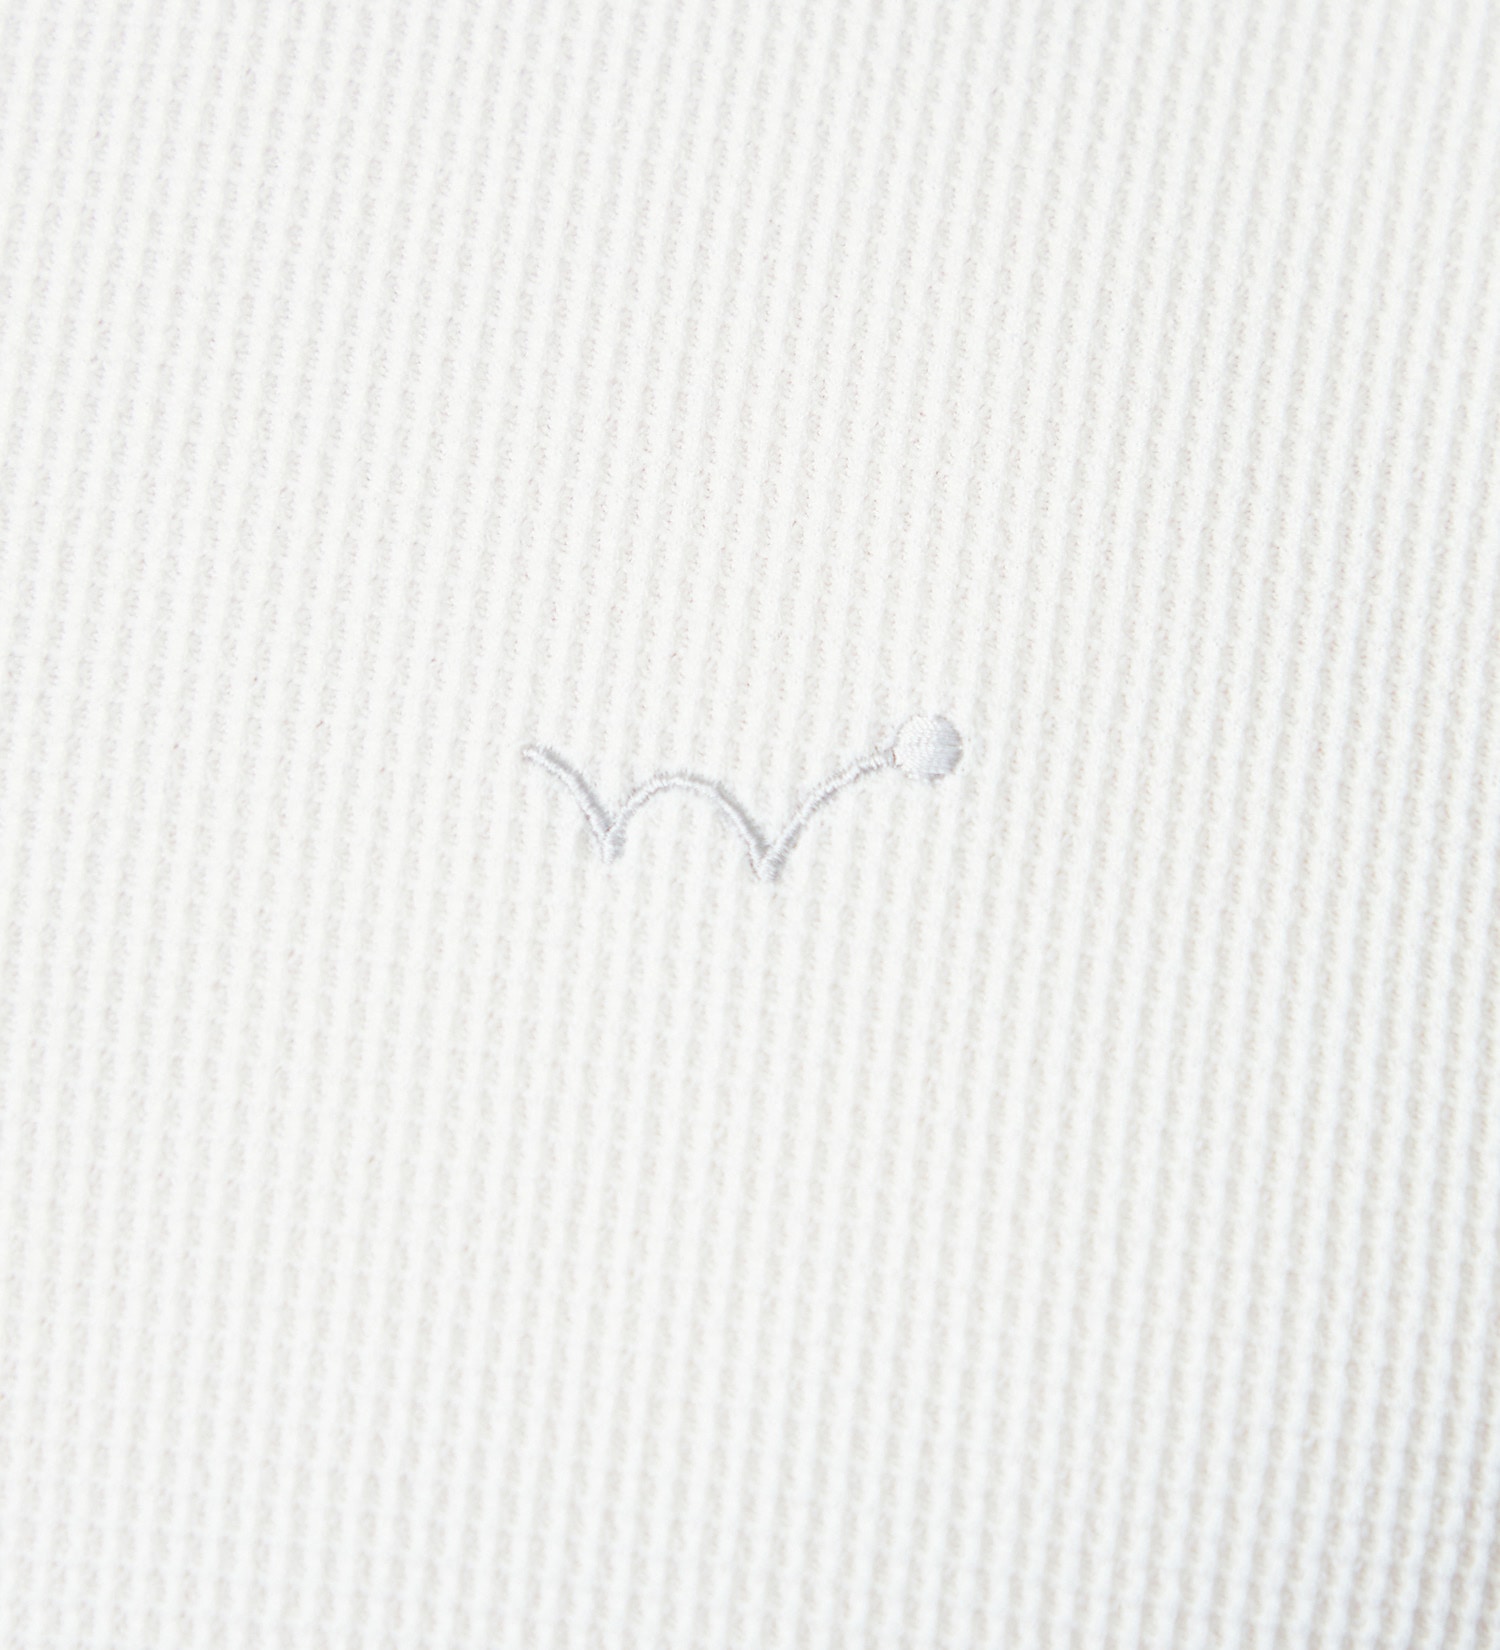 EDWIN(エドウイン)のEDWIN GOLF ミニワッフルポロシャツ半袖Tシャツ|トップス/Tシャツ/カットソー/メンズ|ホワイト